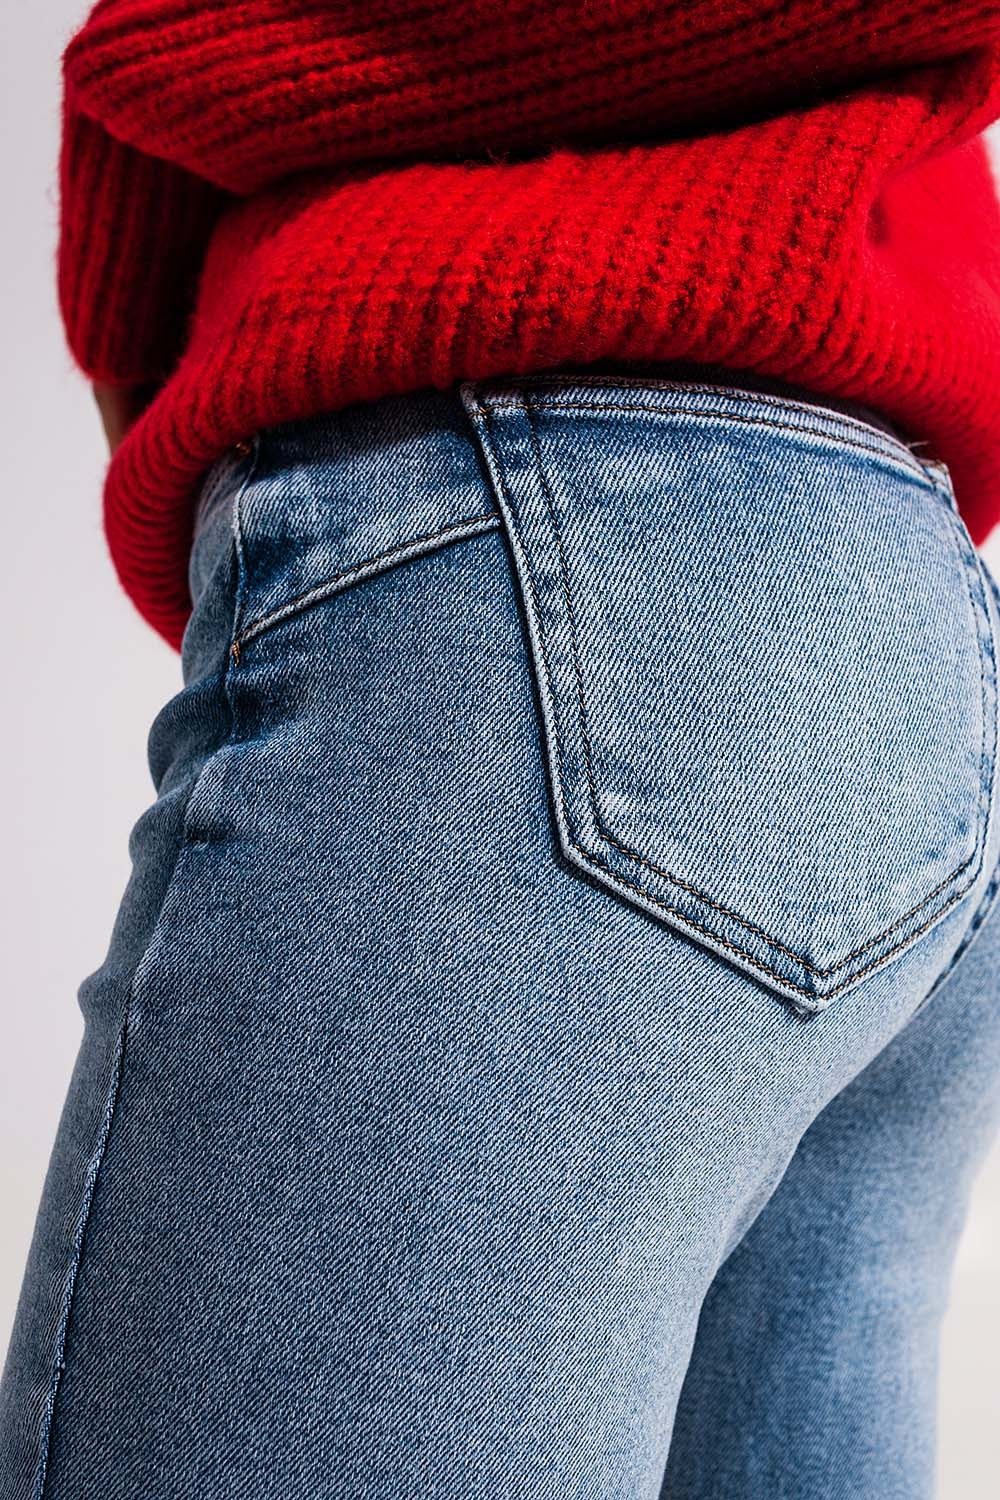 Bleached push up jeans Szua Store